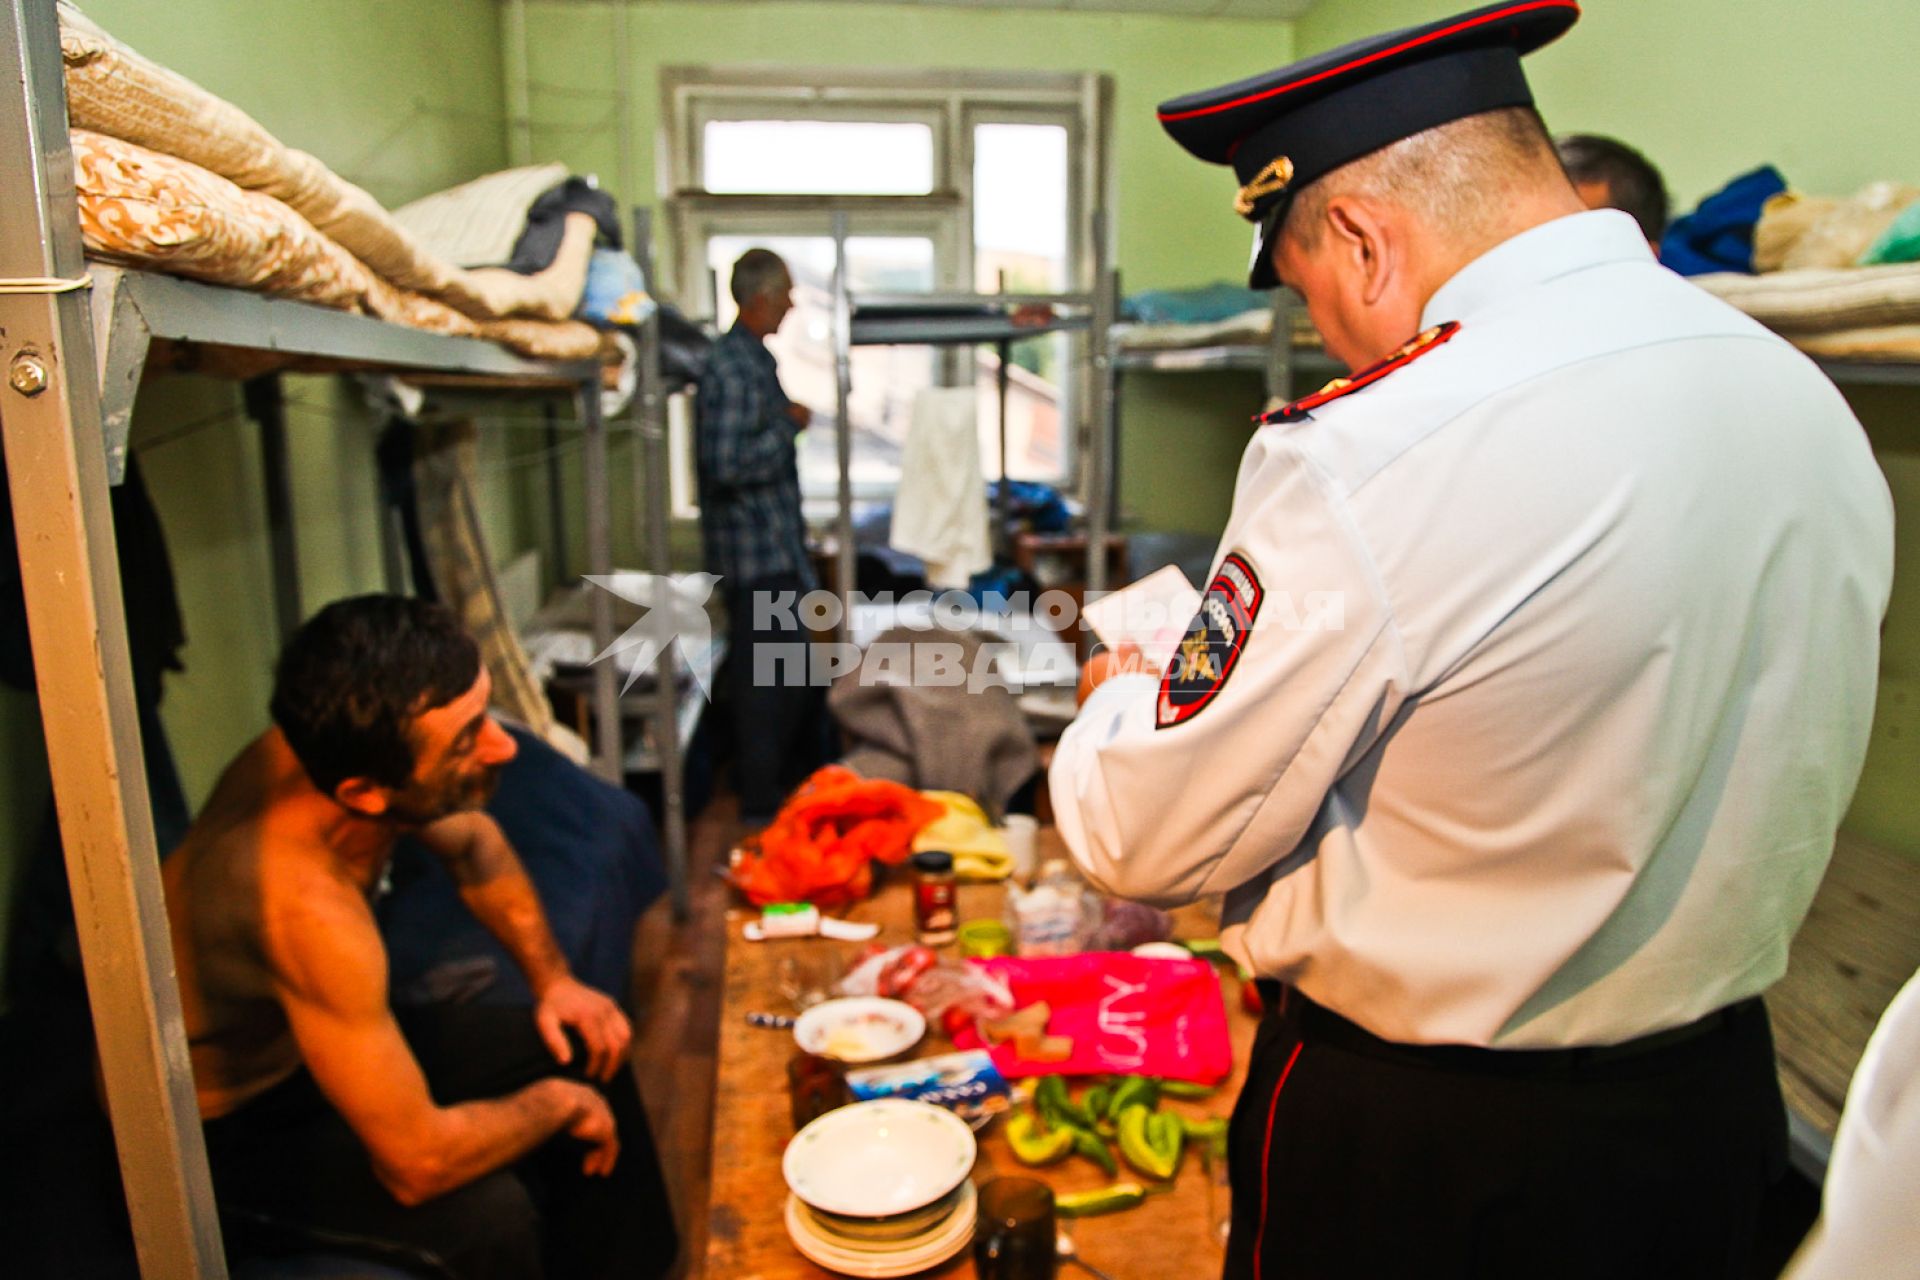 Сотрудник полиции проверяет документы у мужчины в общежитии в рамках рейда УФМС по поиску нелегальных мигрантов